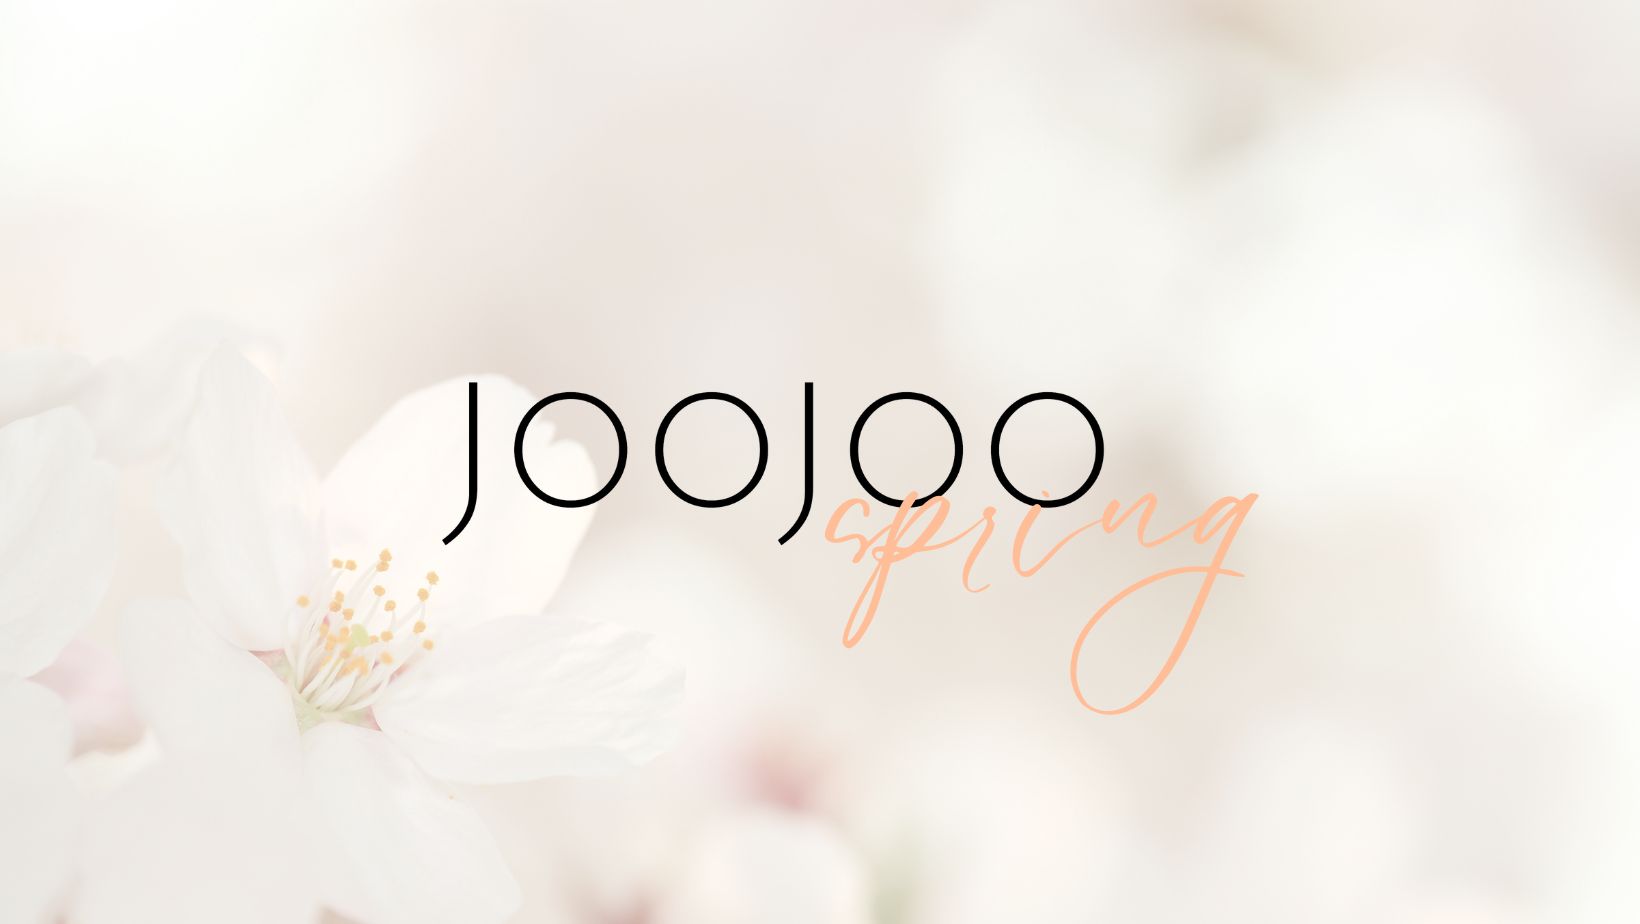 Joojoo - Looks good on you